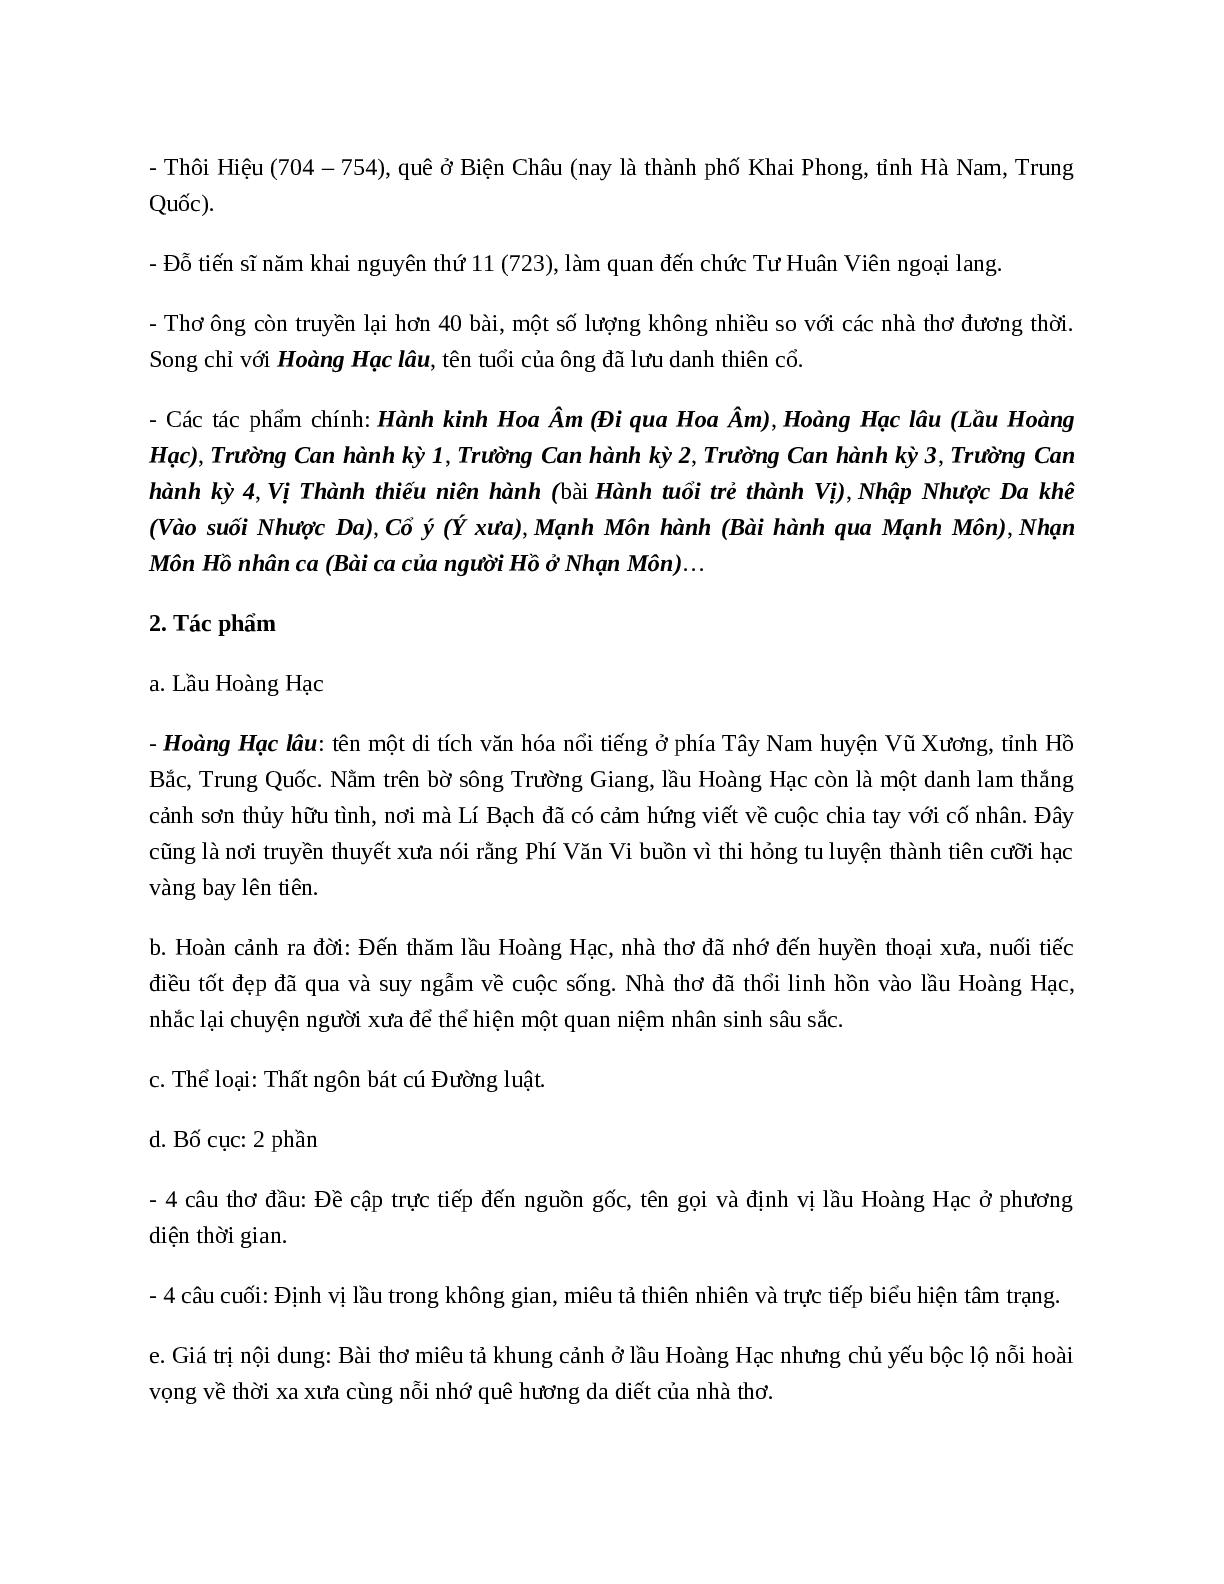 Lầu Hoàng Hạc (Hoàng Hạc Lâu) - Tác giả tác phẩm - Ngữ văn lớp 10 (trang 3)